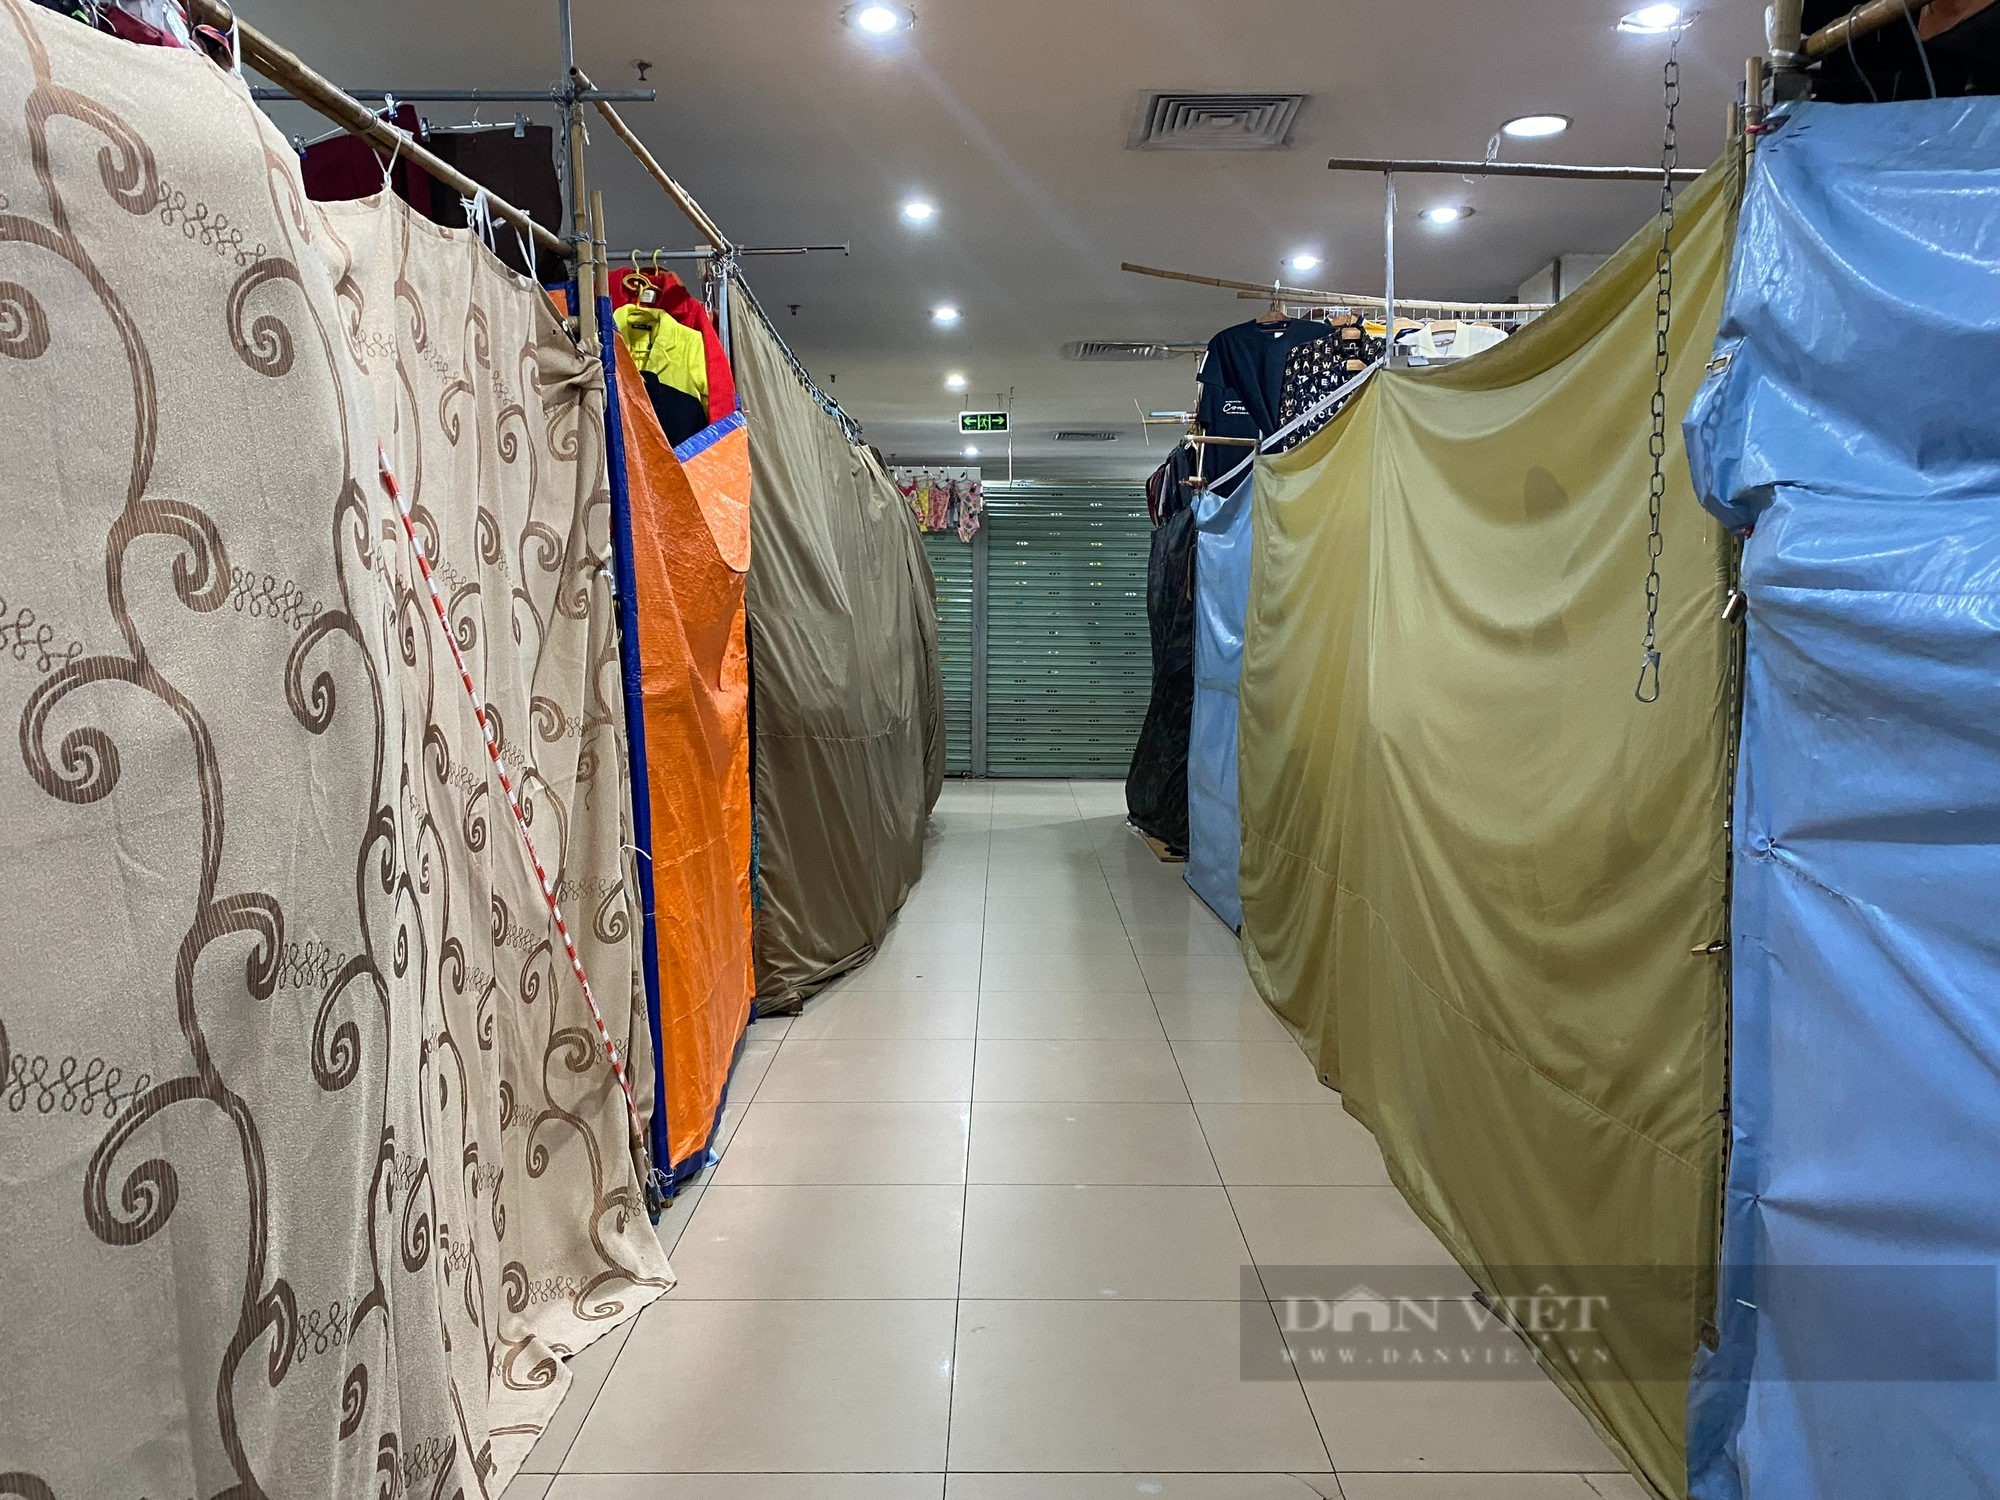 Khu chợ nổi tiếng tại trung tâm Thủ đô ế ẩm, tiểu thương ngồi đan len, lướt điện thoại - Ảnh 4.